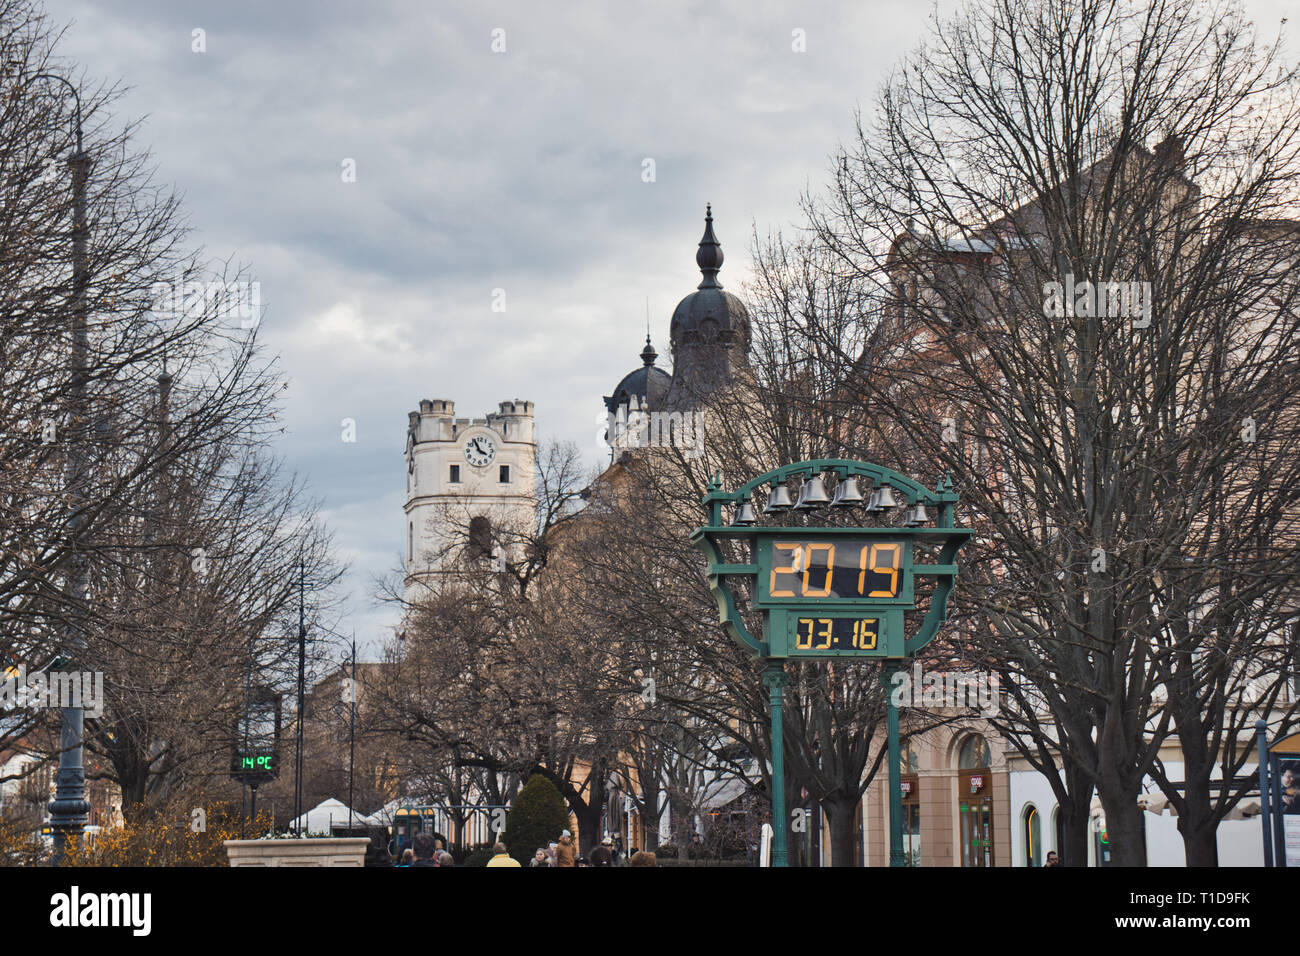 Ein Anblick von Debrecen, Ungarn mit dem berühmten Turm abgeschnitten. Stockfoto